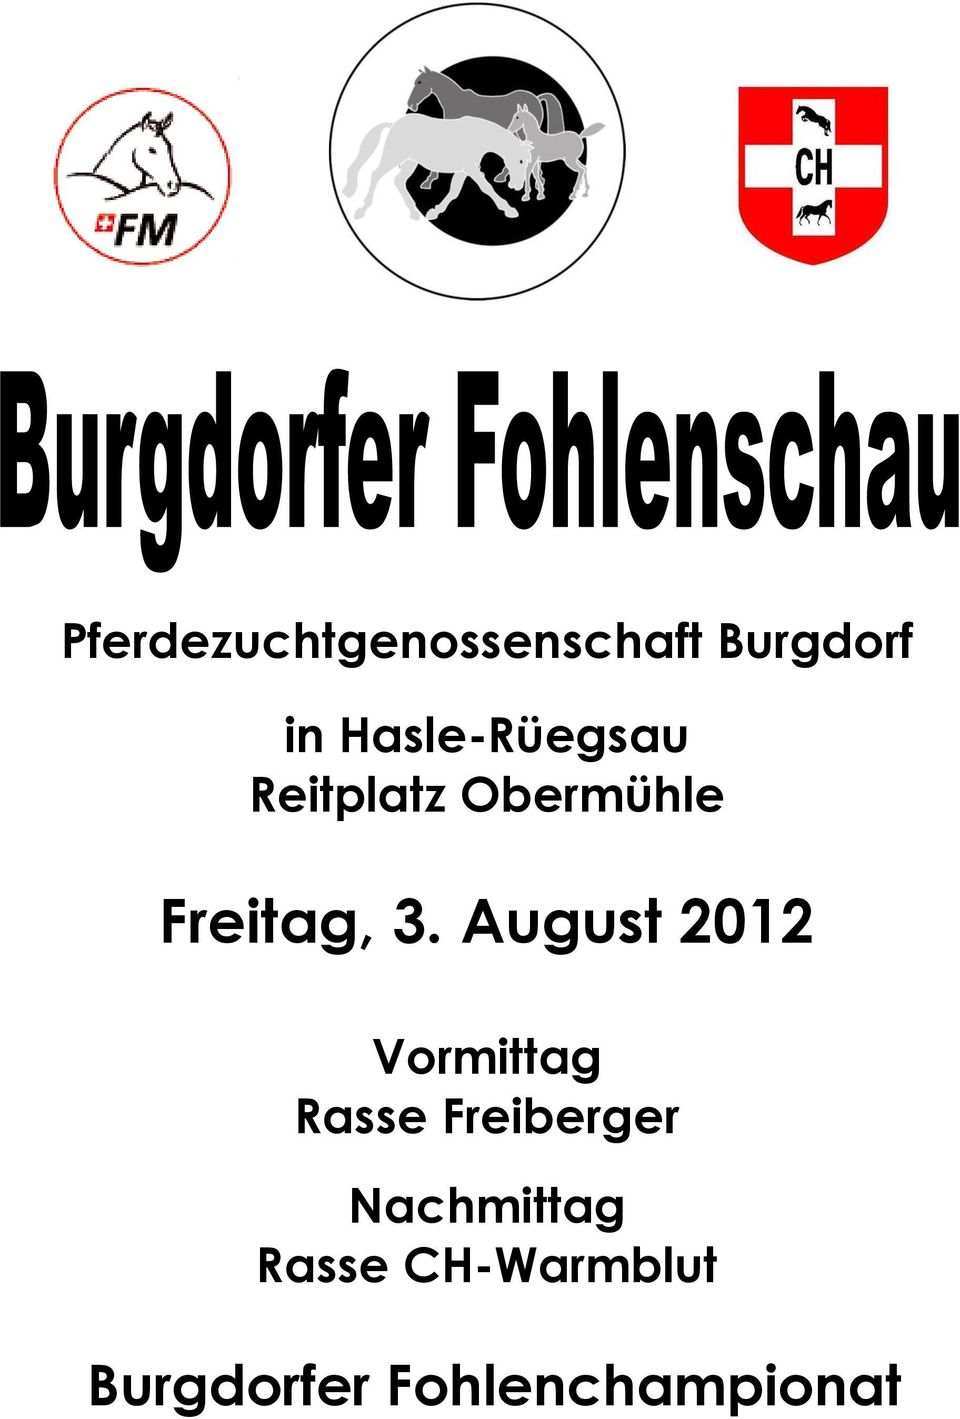 August 2012 Vormittag Rasse Freiberger